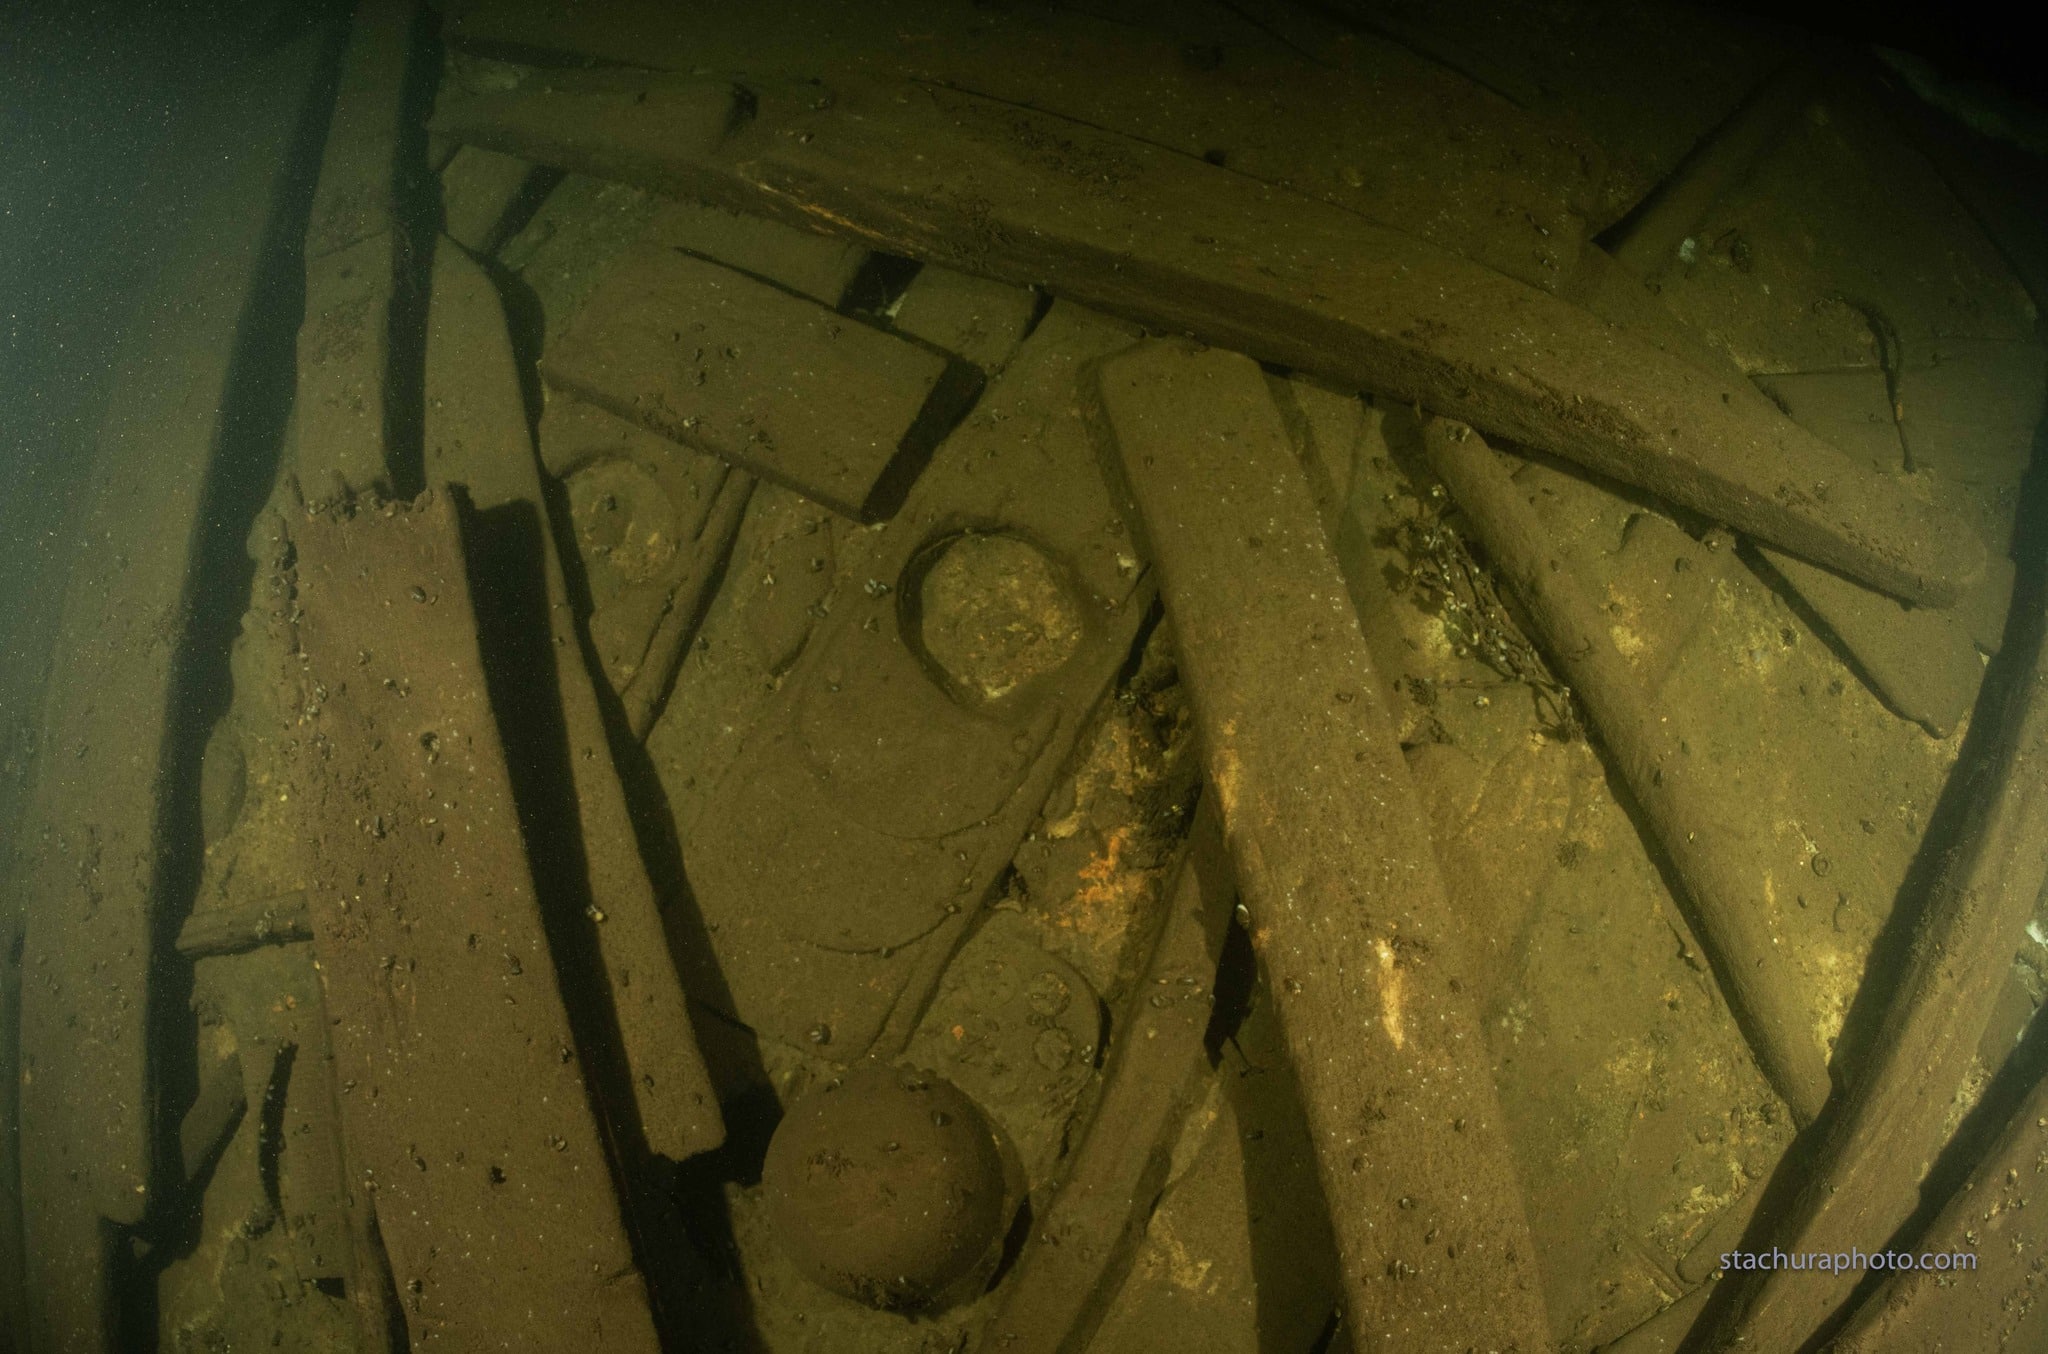 Shipwreck in the Baltic Sea